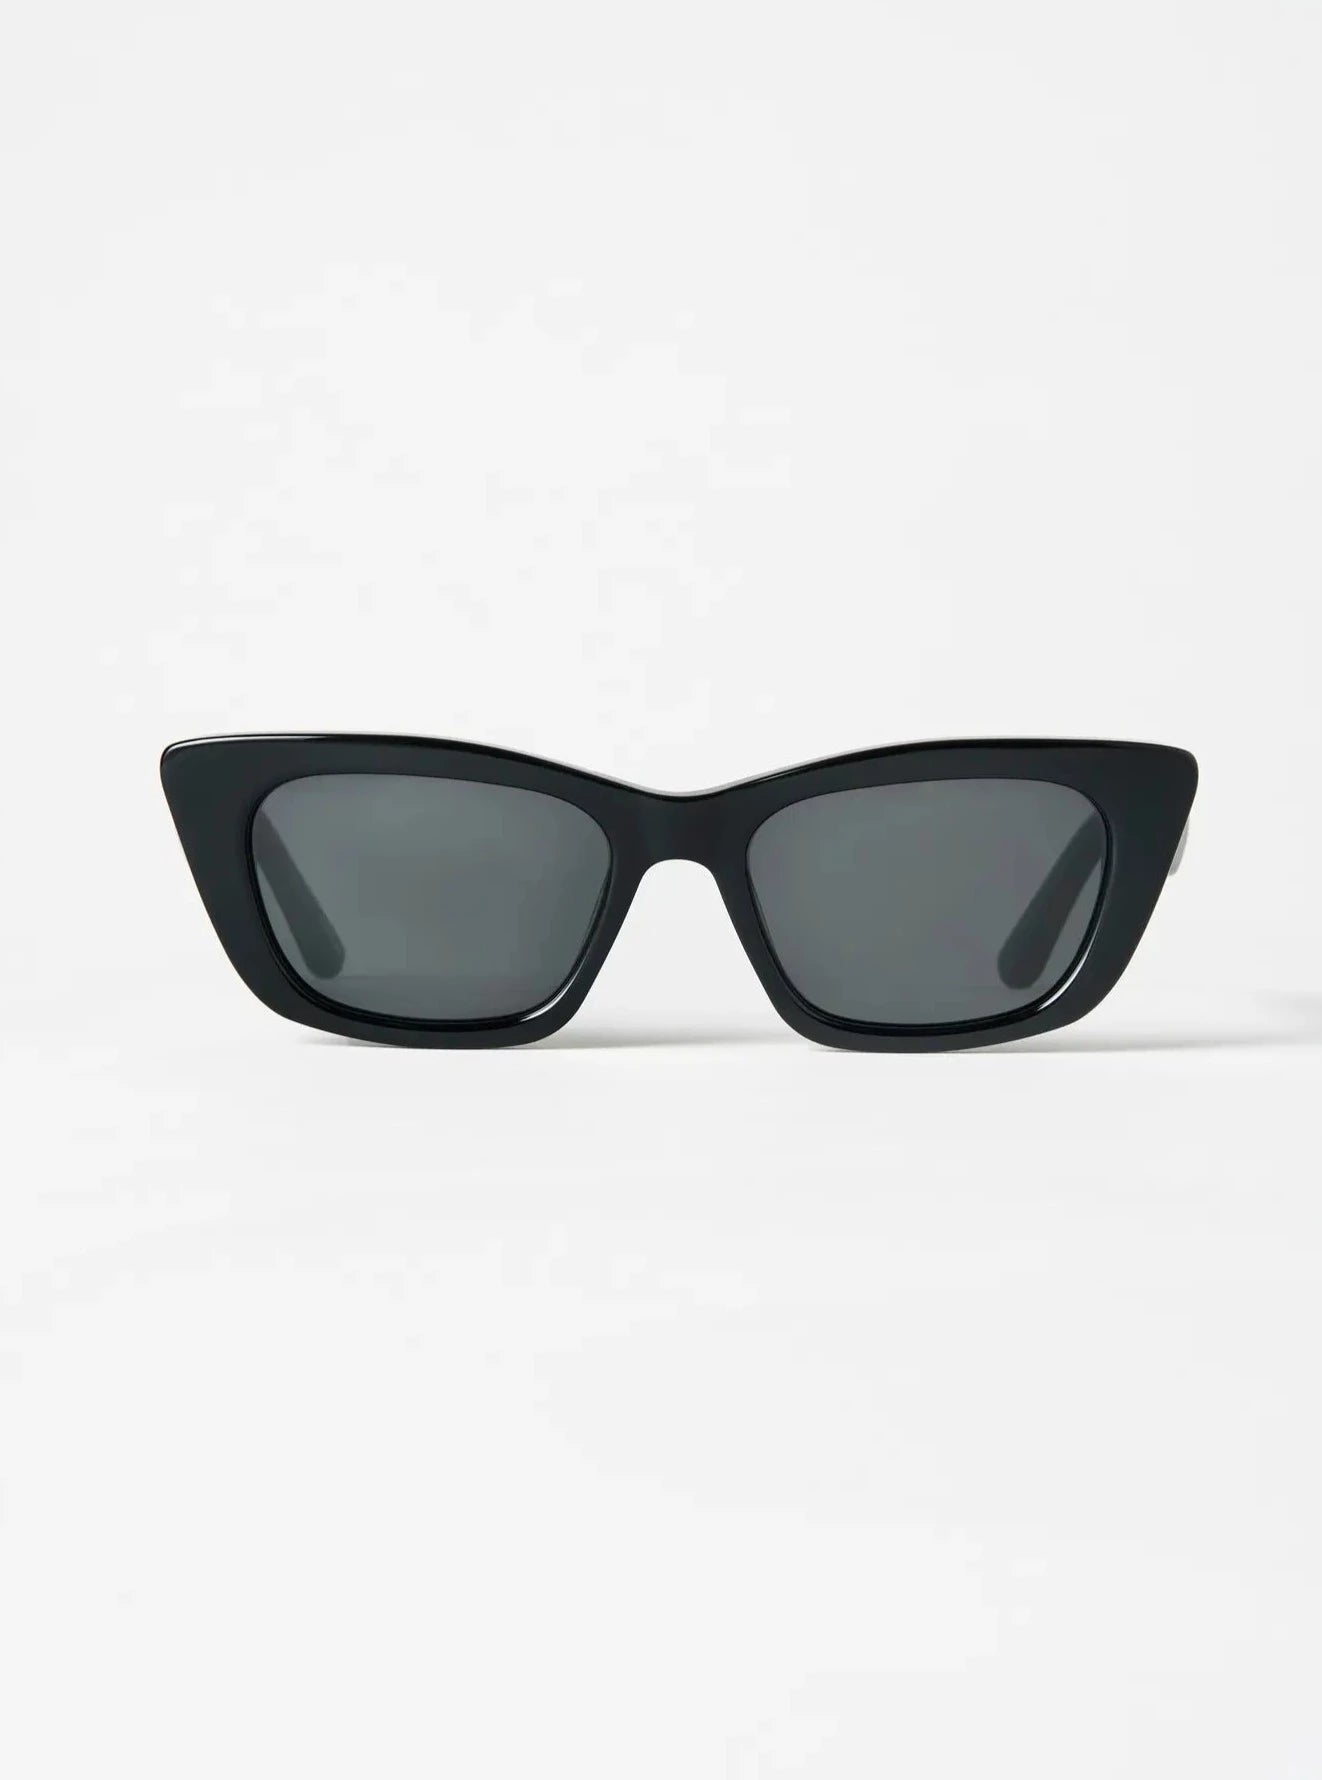 Chimi Tom Greyhound Sunglasses - Black